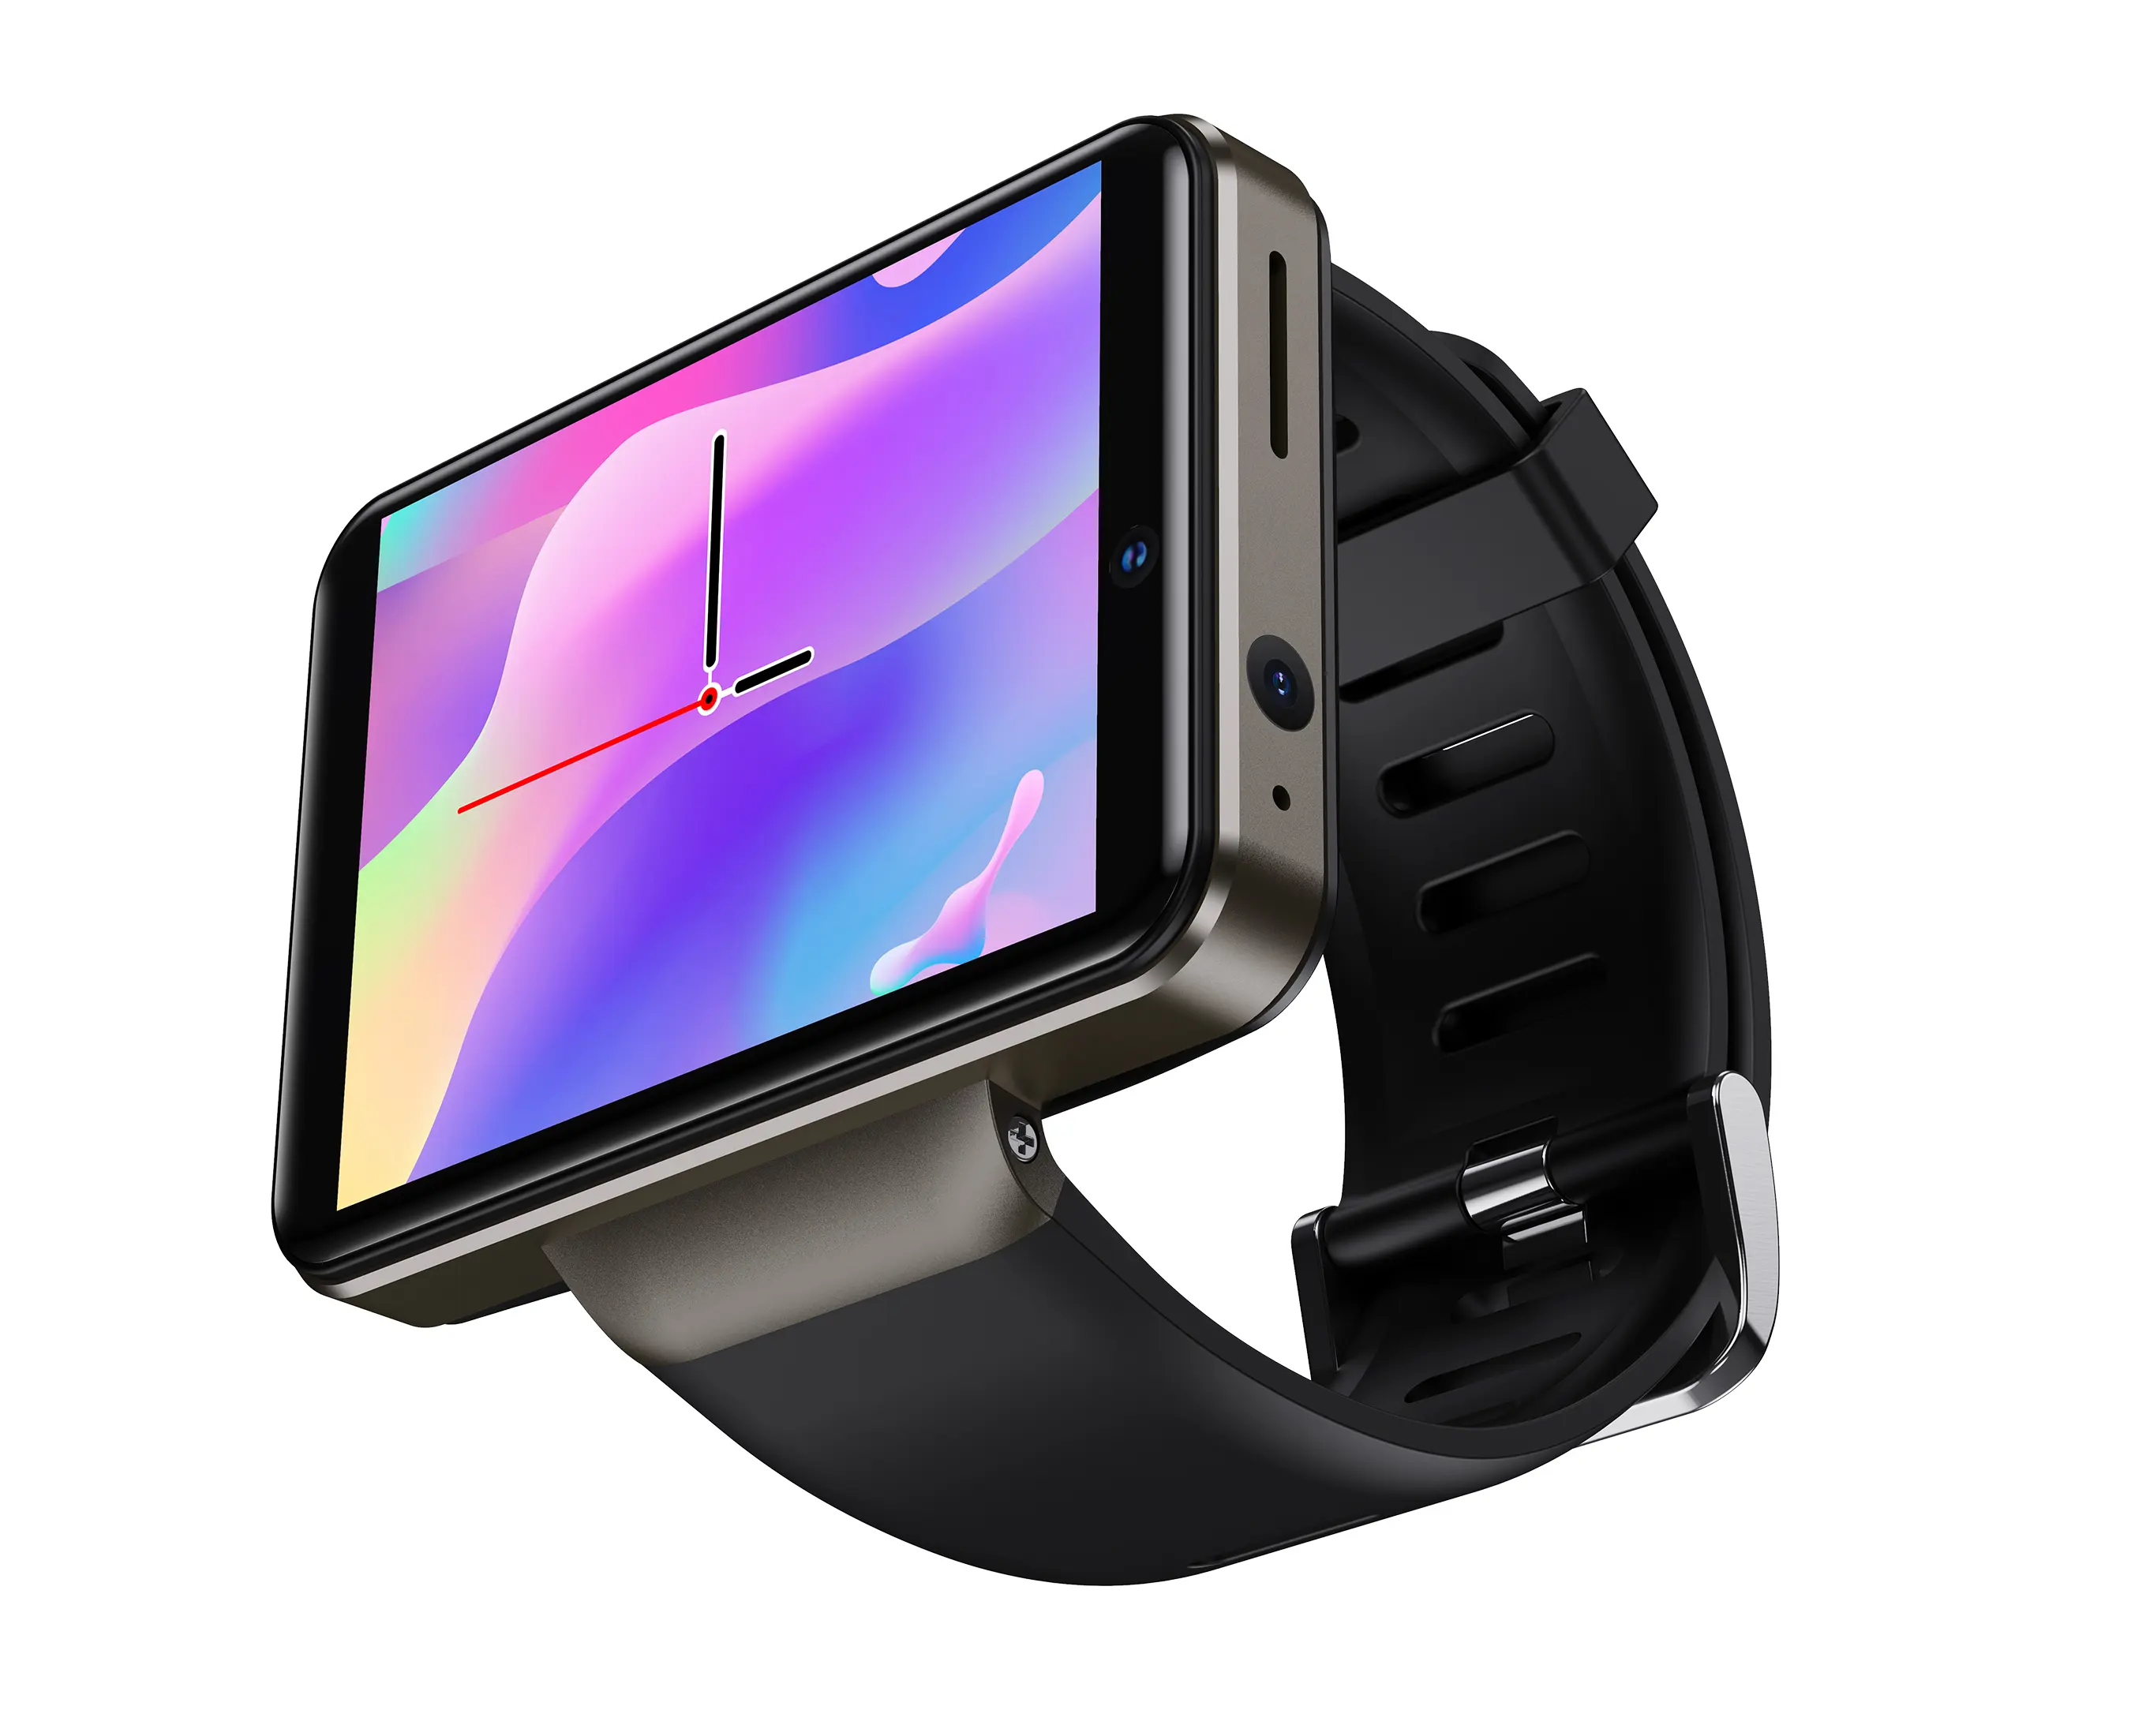 OEM 2022 Новый DM101 Смарт-часы для Android с поддержкой 4G, двойная камера, 2080 mAh аккумулятор, Wi-Fi, GPS и большом экране Smartwatch для iOS и Android